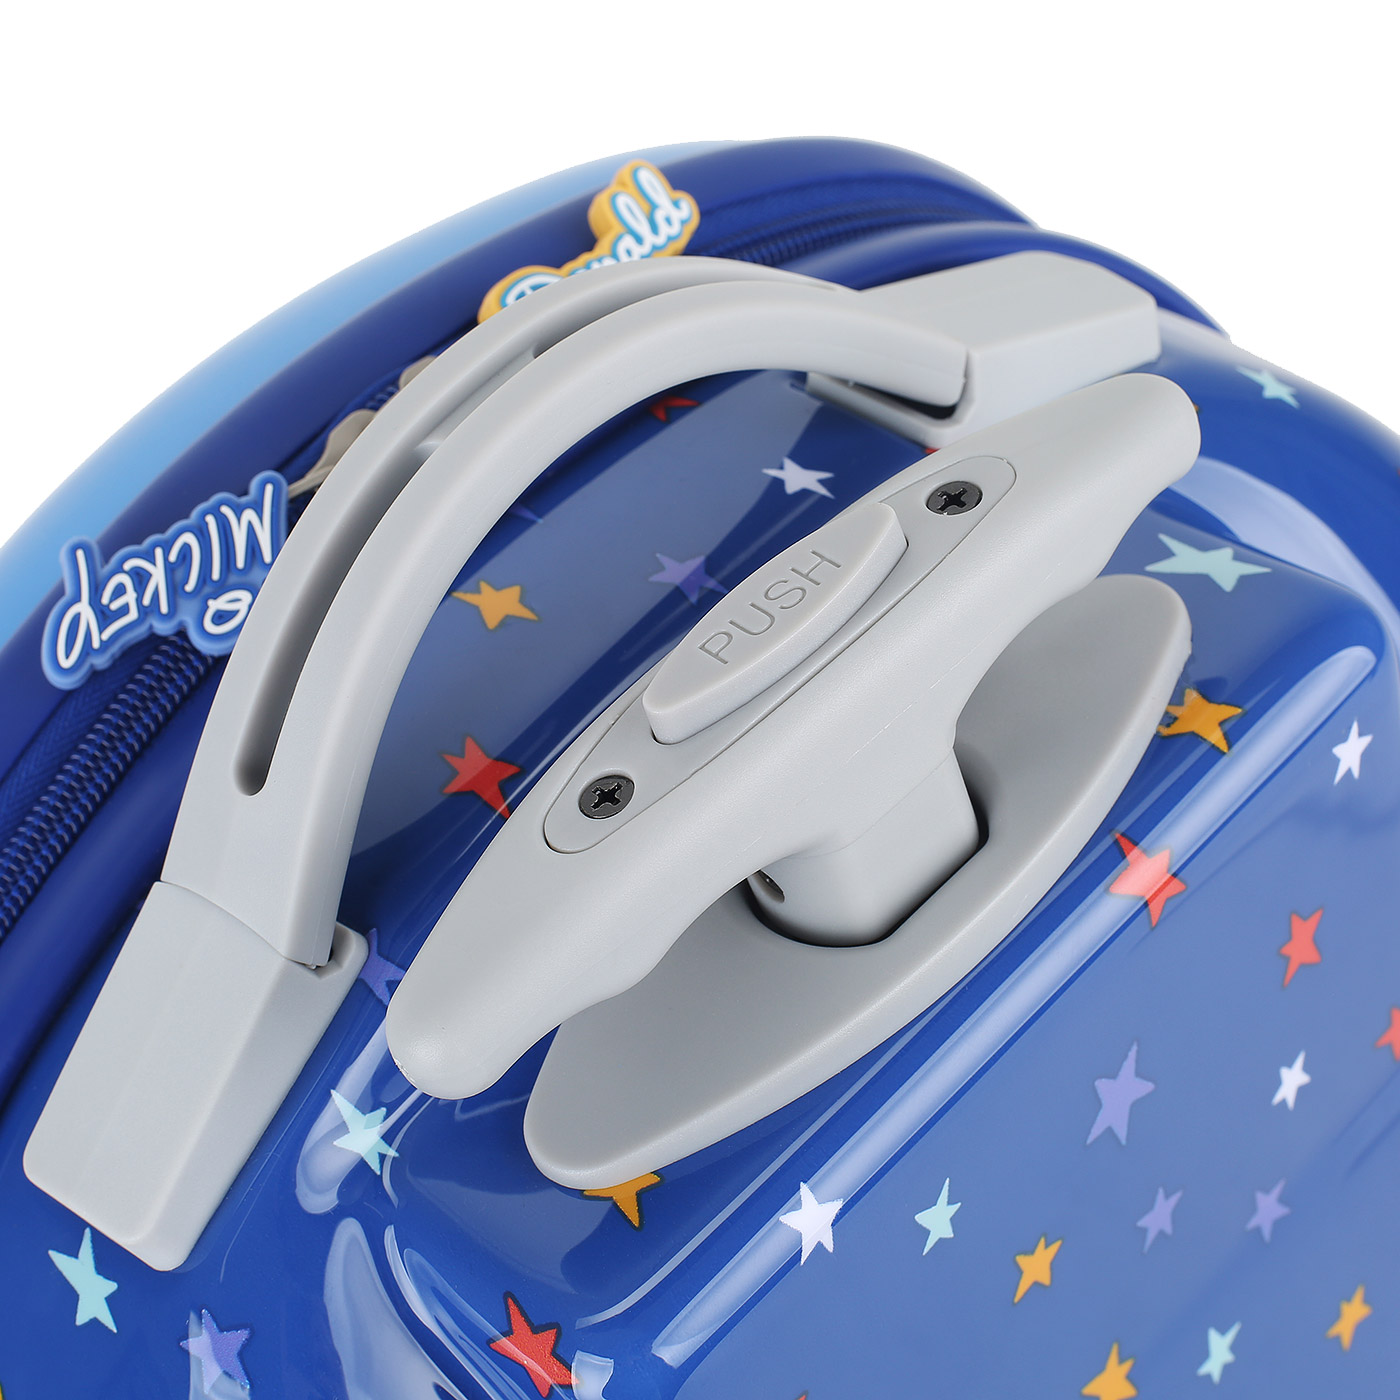 Детский чемодан с принтом Samsonite Disney Ultimate